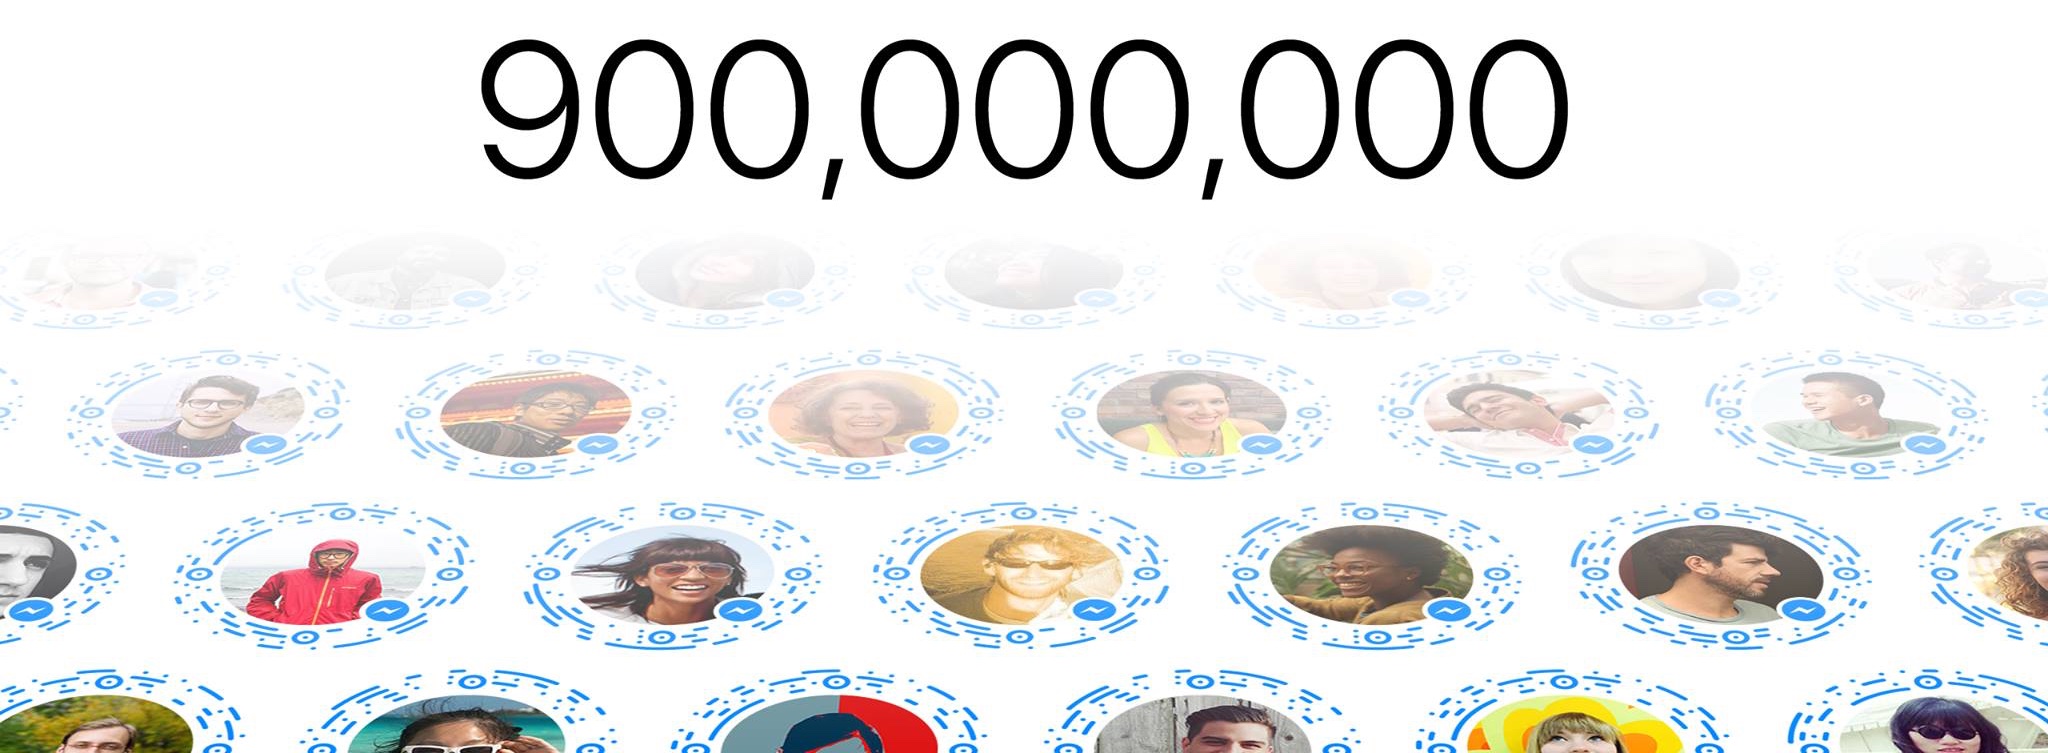 Facebook Messenger 900 million users teaser 001